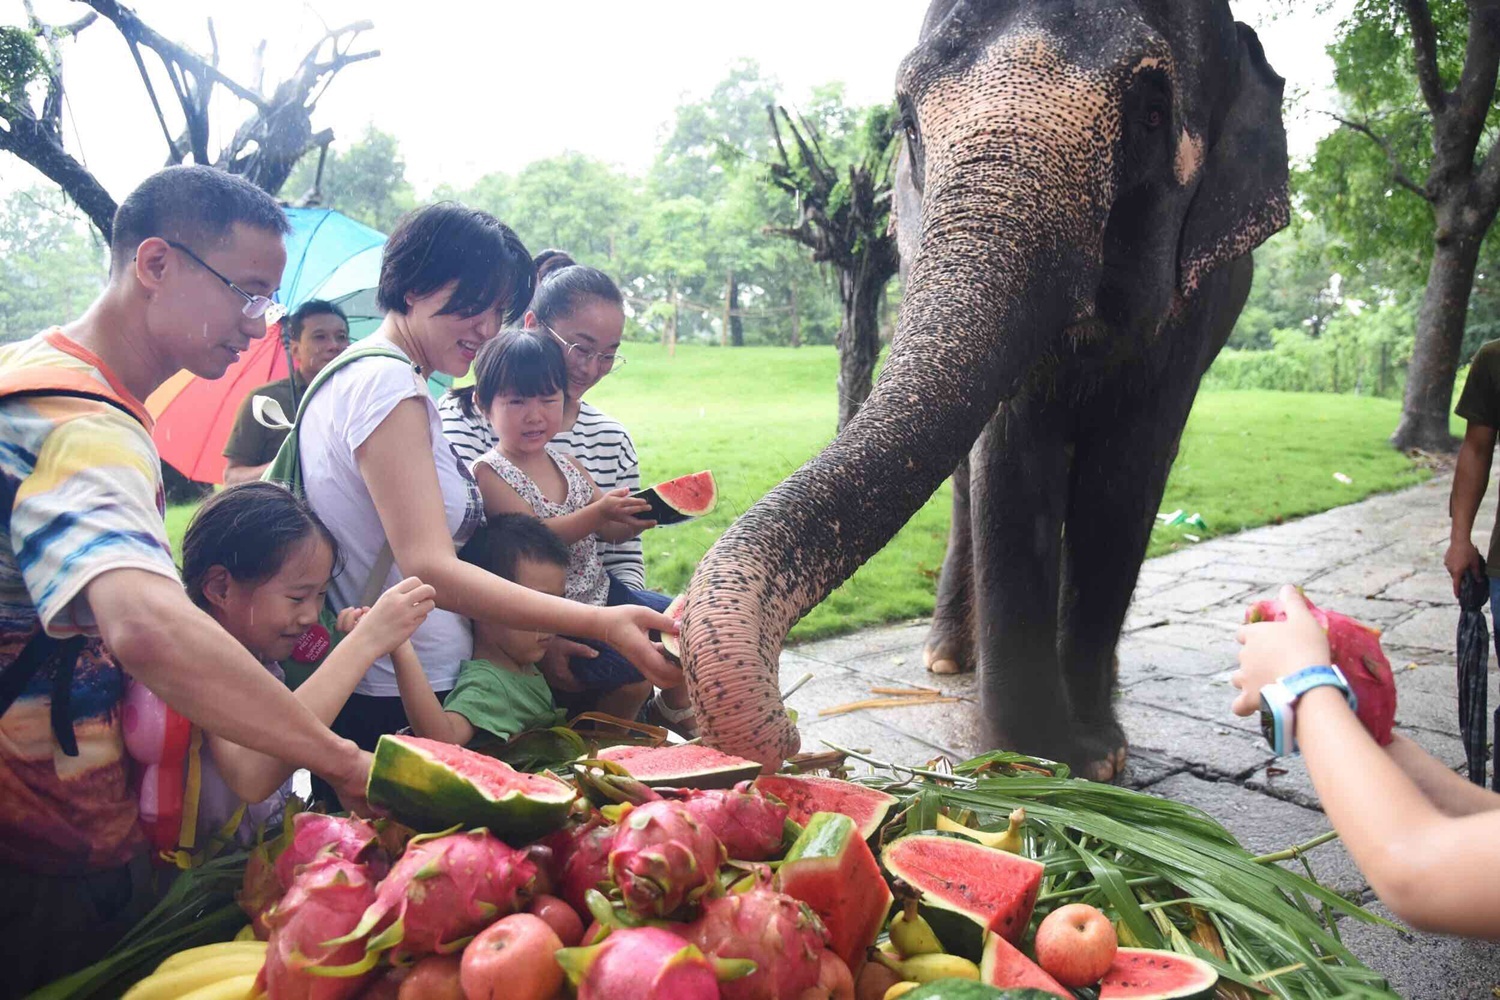 当天上午,工作人员为该园大象准备了香蕉,苹果,西瓜,火龙果等果蔬